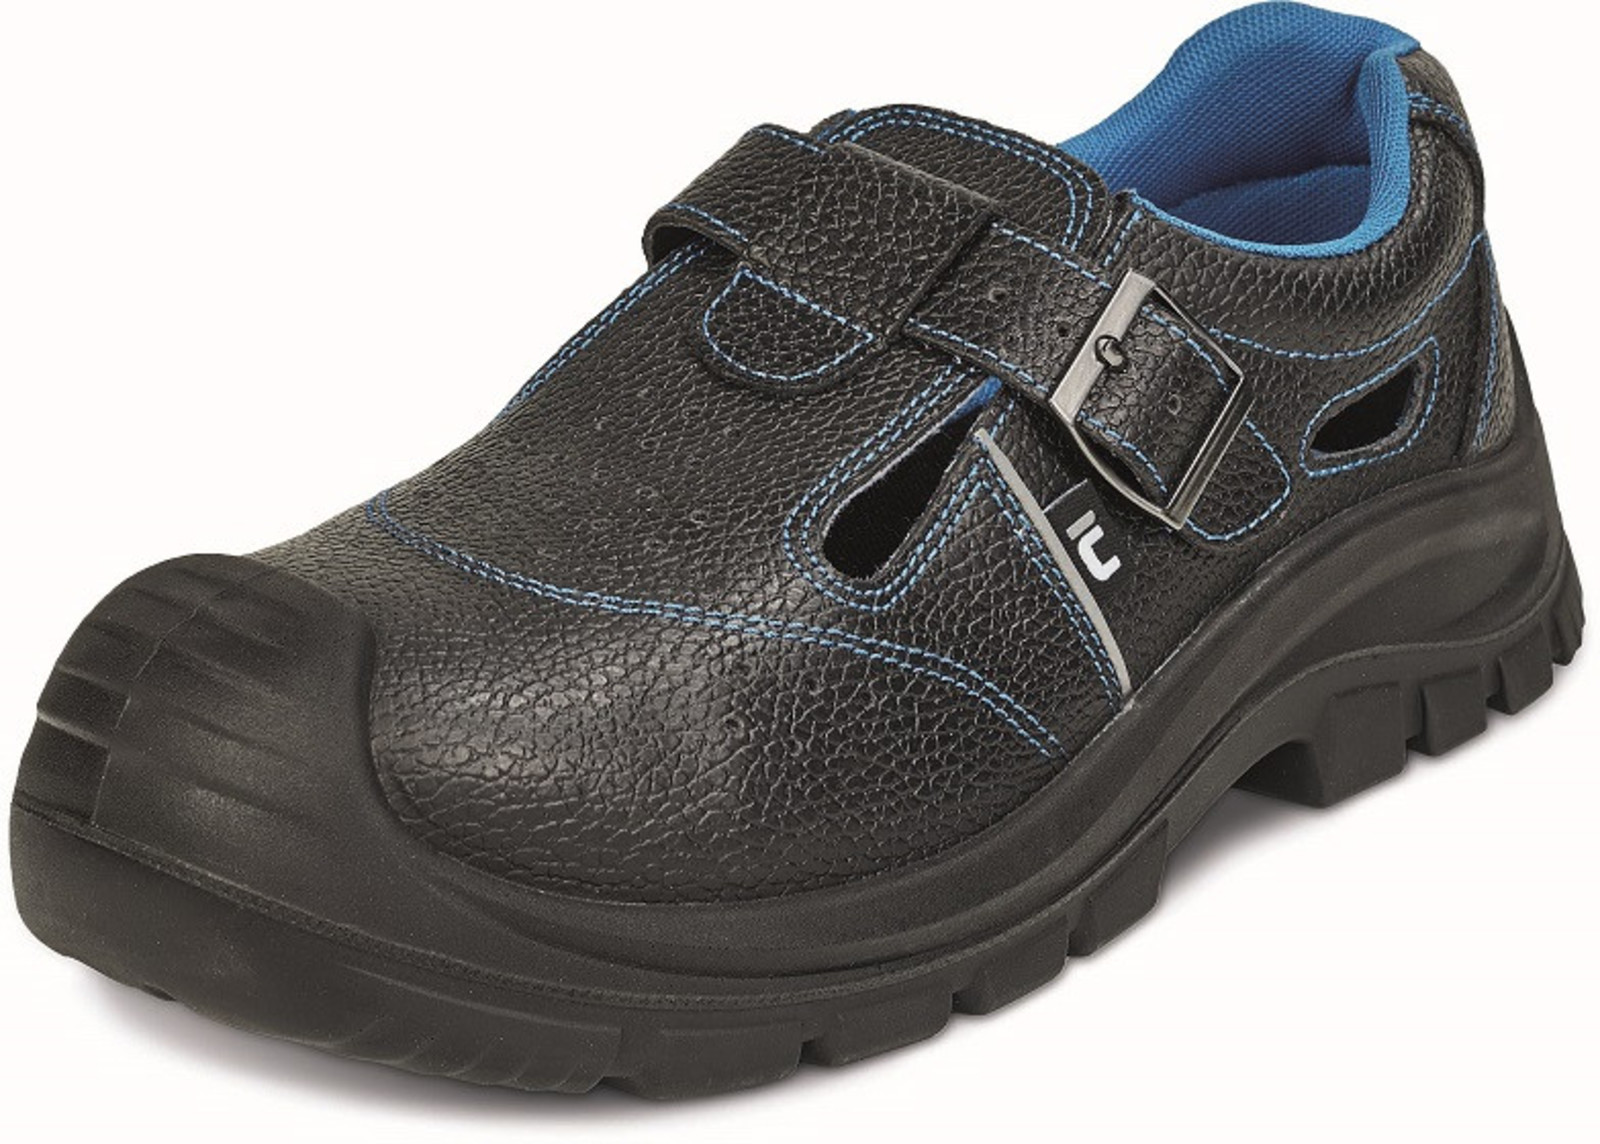 Bezpečnostné sandále Raven XT S1P - veľkosť: 47, farba: čierna